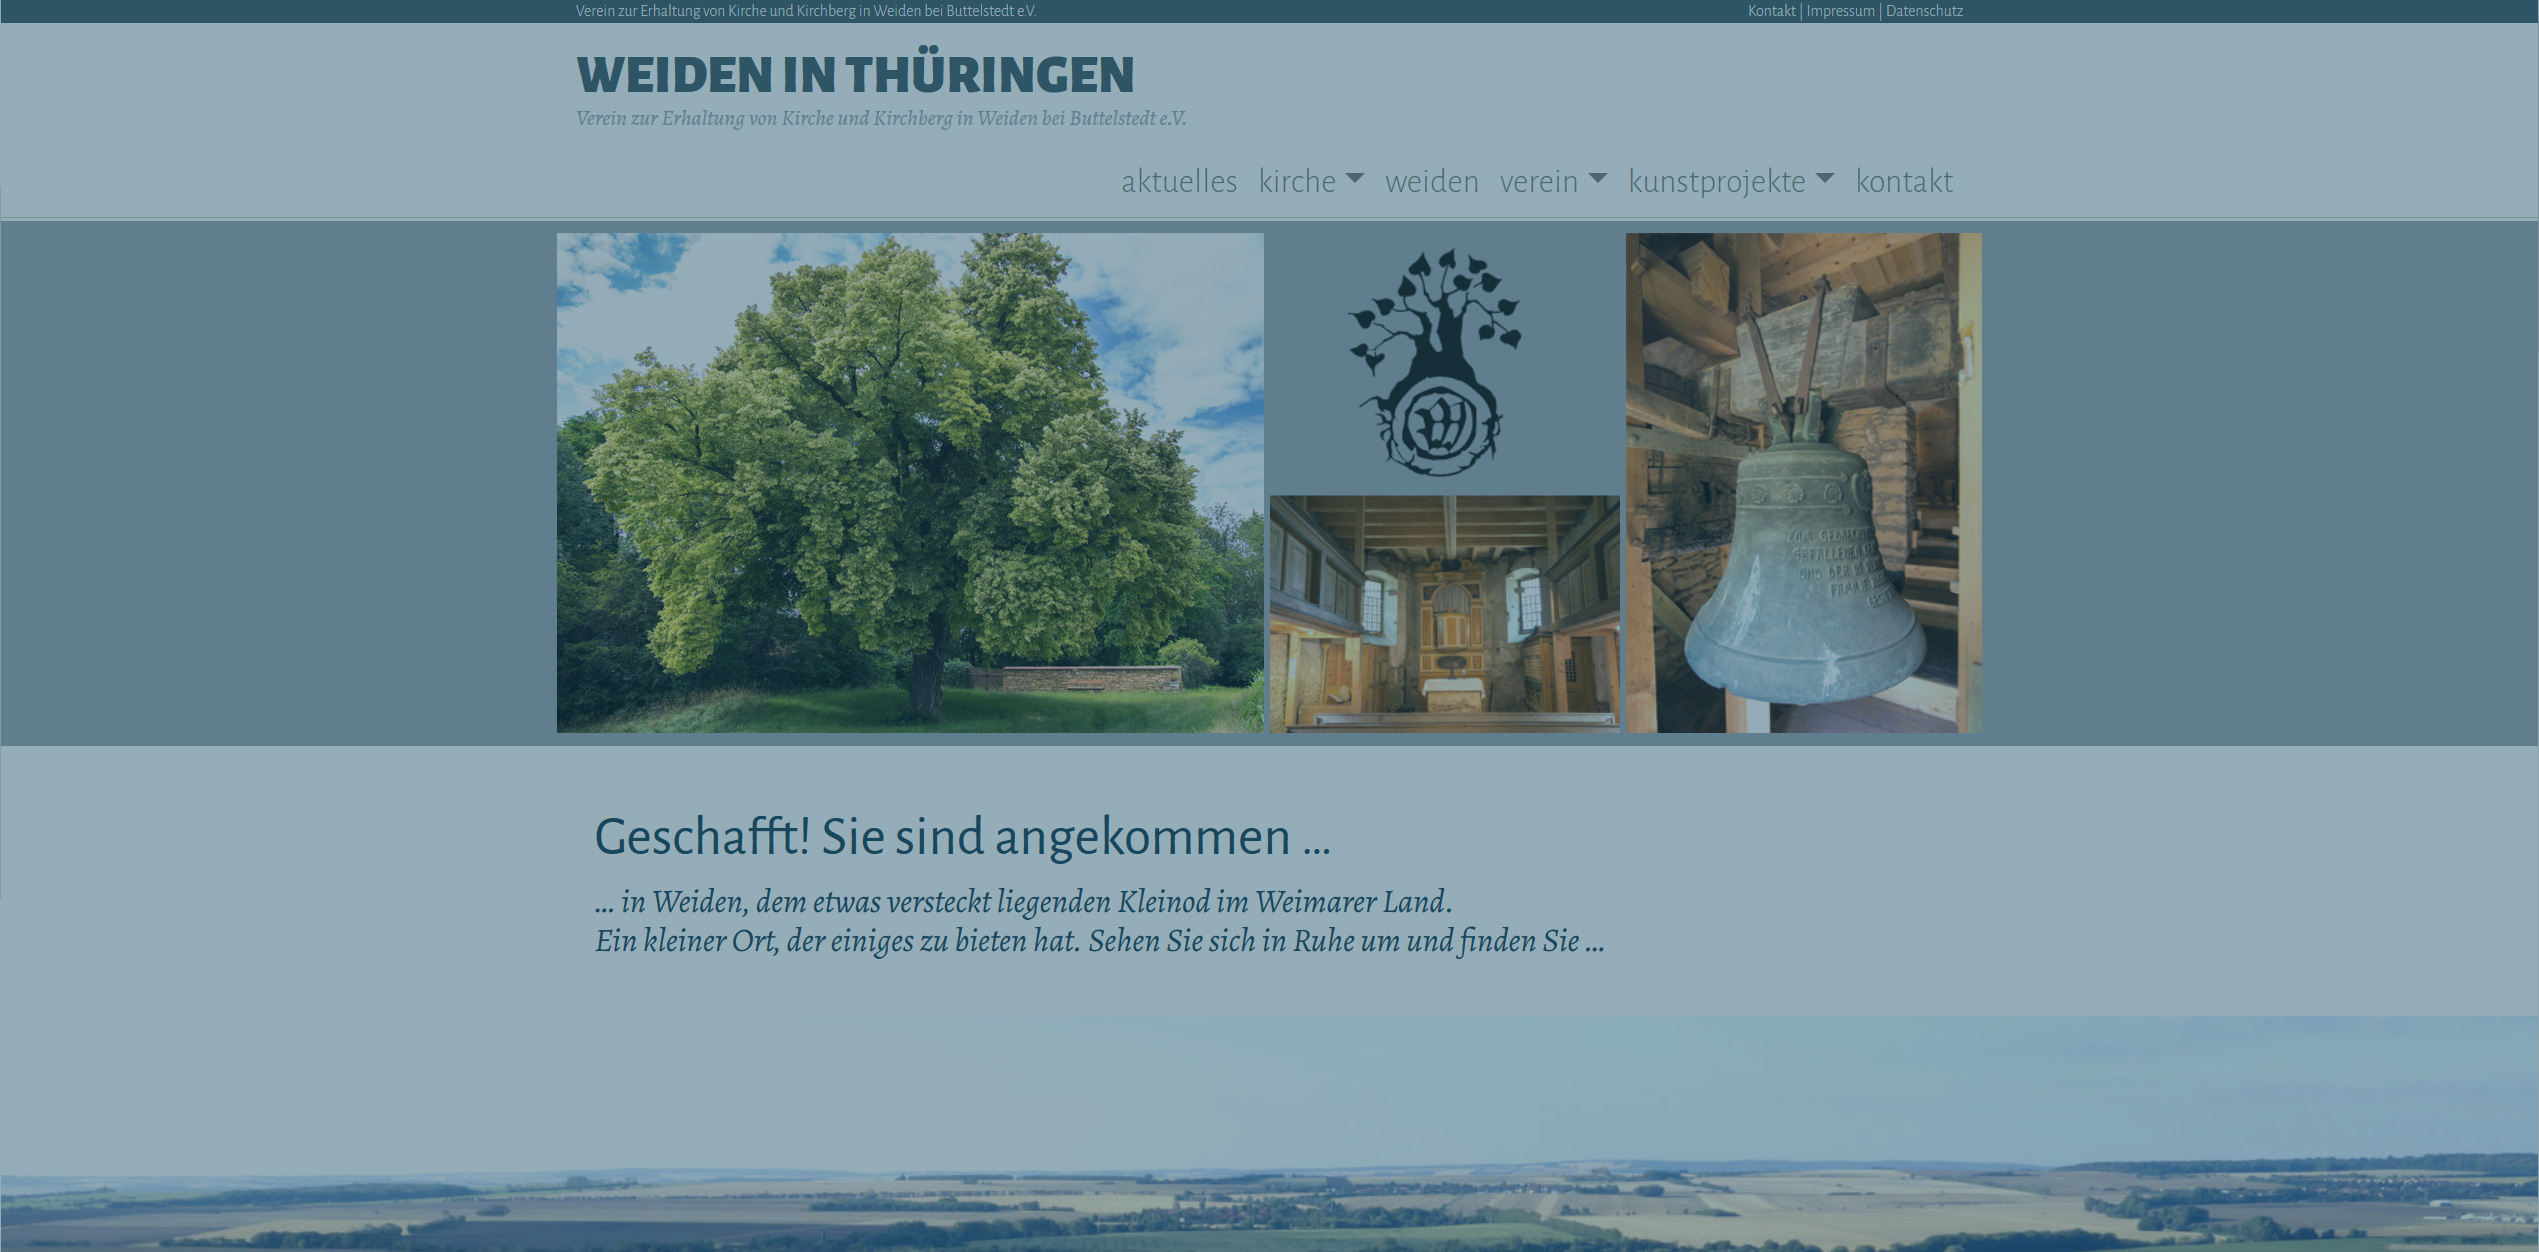 Verein zur Erhaltung von Kirche und Kirchberg in Weiden bei Buttelstedt e.V.